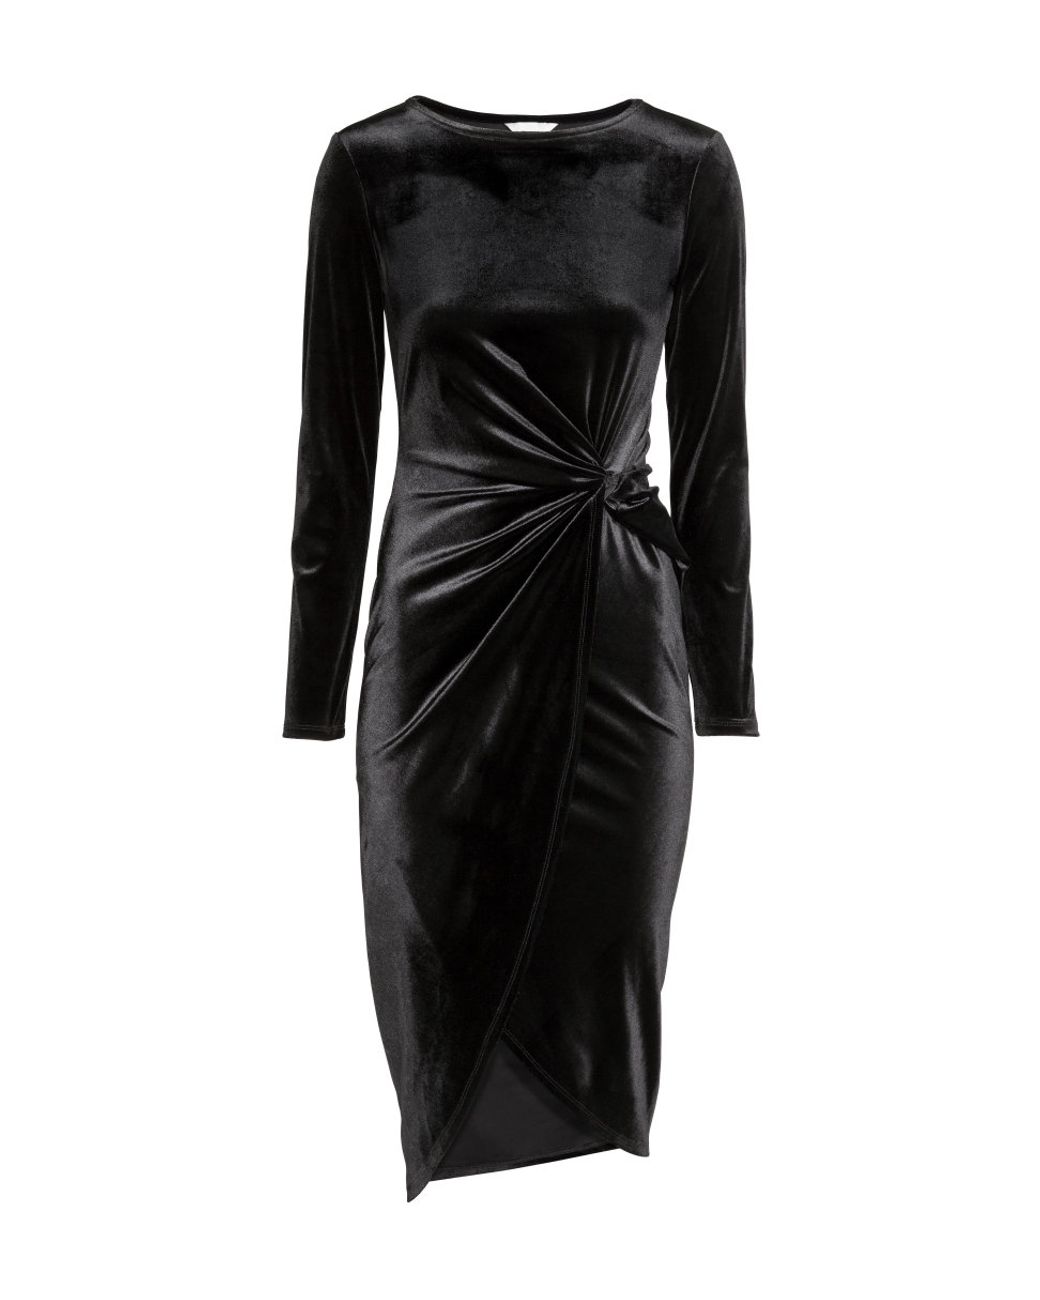 H&M Draped Velvet Dress in Black | Lyst UK